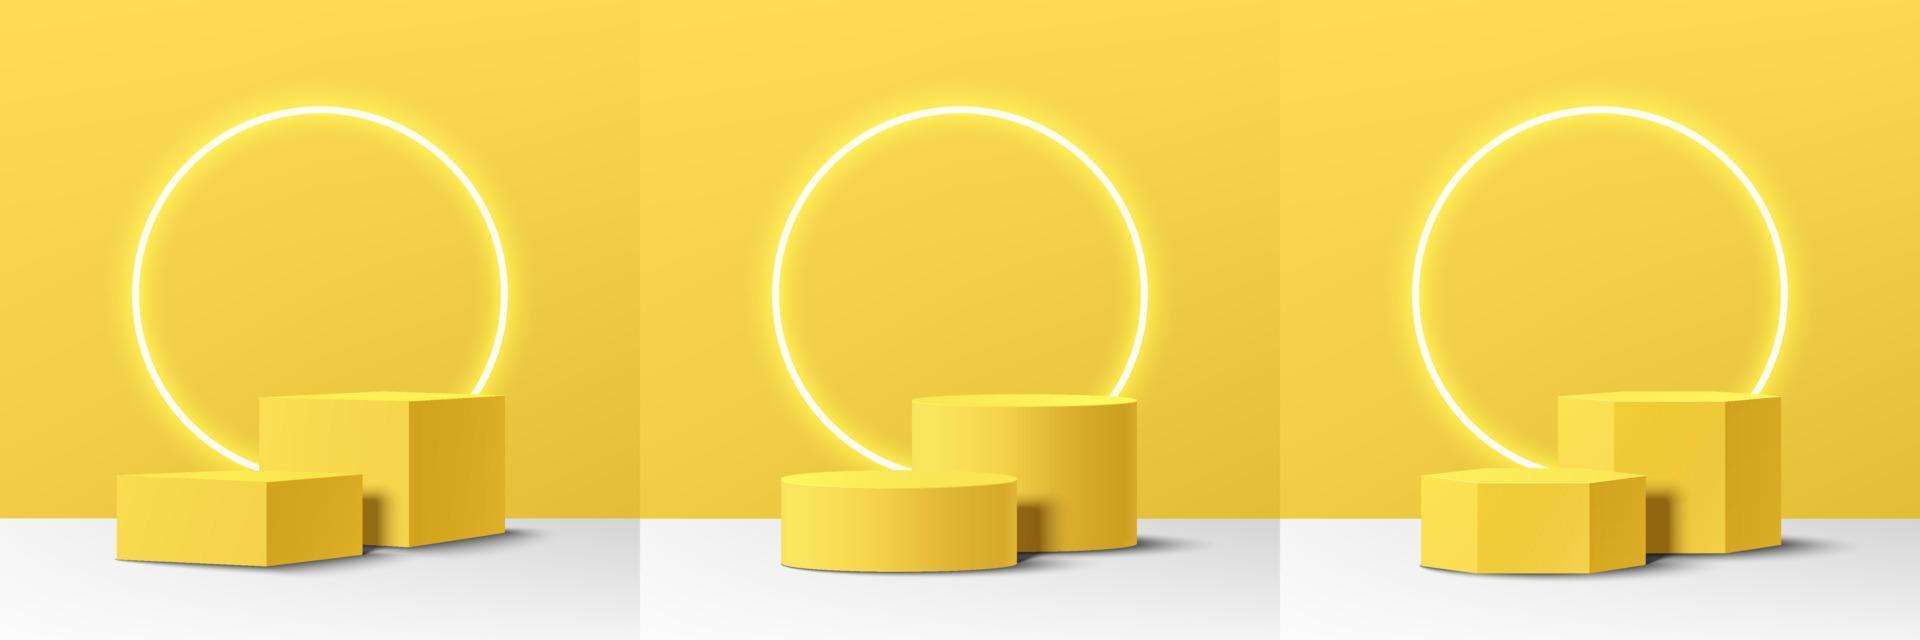 ensemble de podium de piédestal de cylindre, de cube et d'hexagone 3d jaune réaliste avec une lampe de cercle au néon brillant. scène minimale abstraite pour la vitrine des produits, l'affichage de la promotion. plate-forme géométrique vectorielle. vecteur